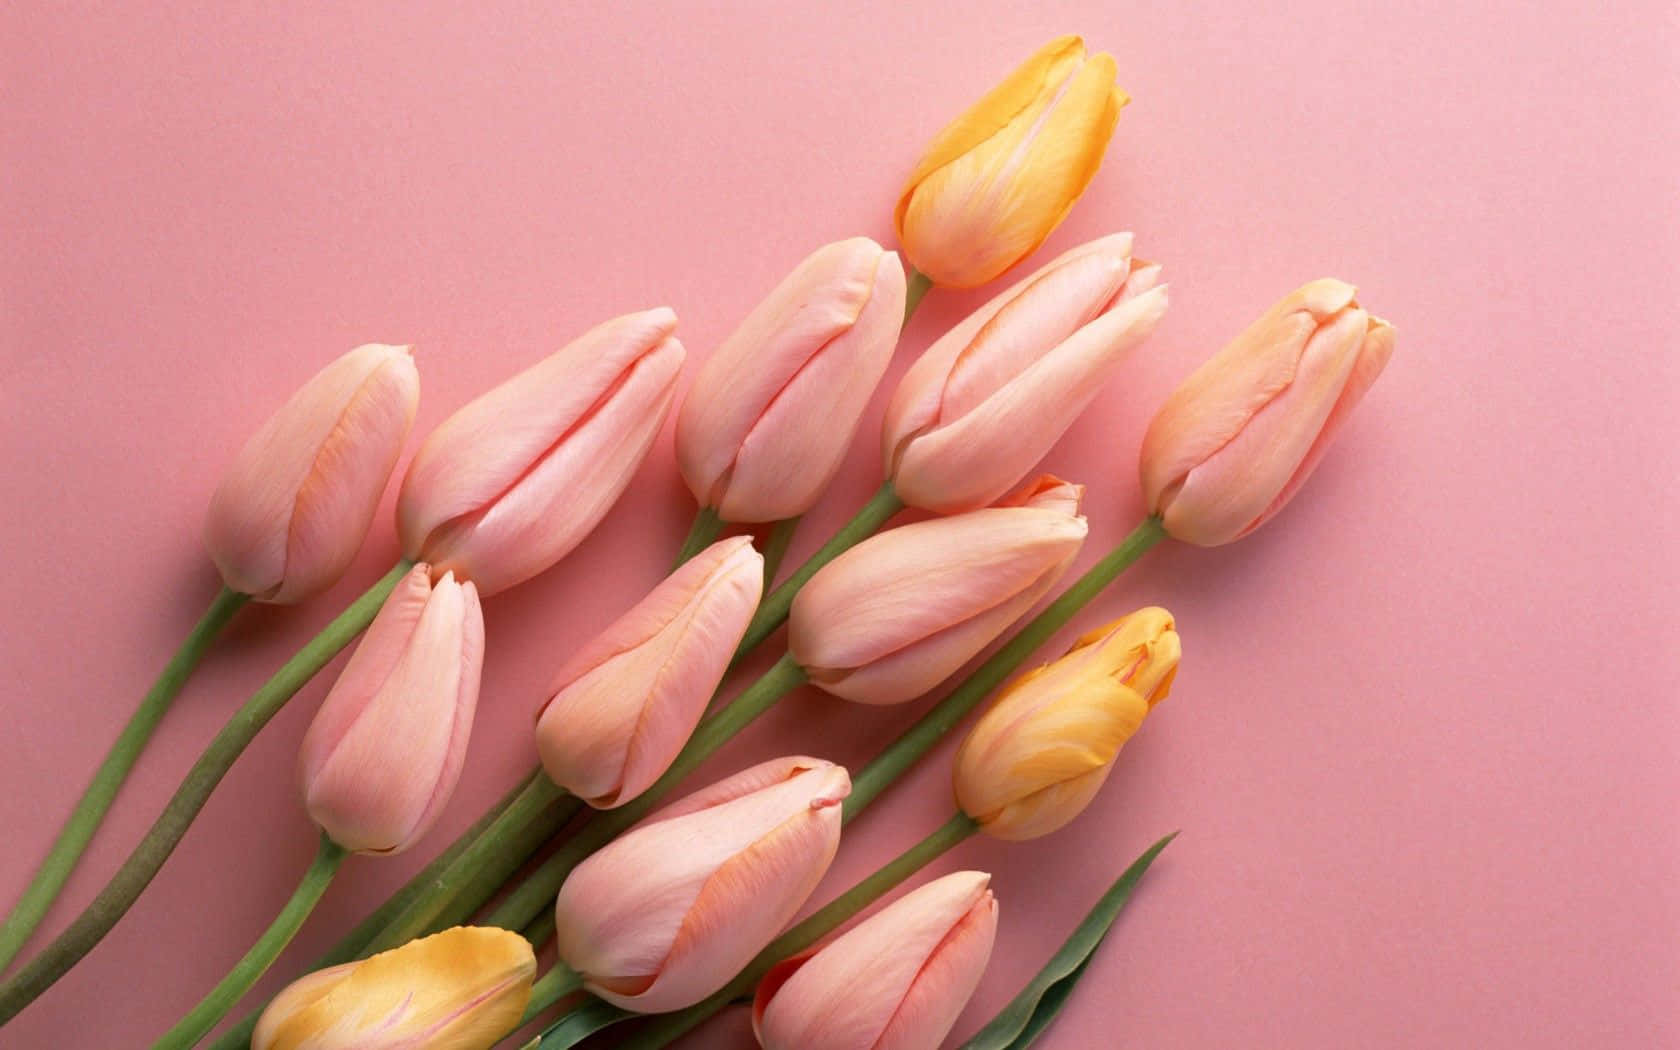 Eineleuchtend Pinkfarbene Tulpe In Voller Blüte